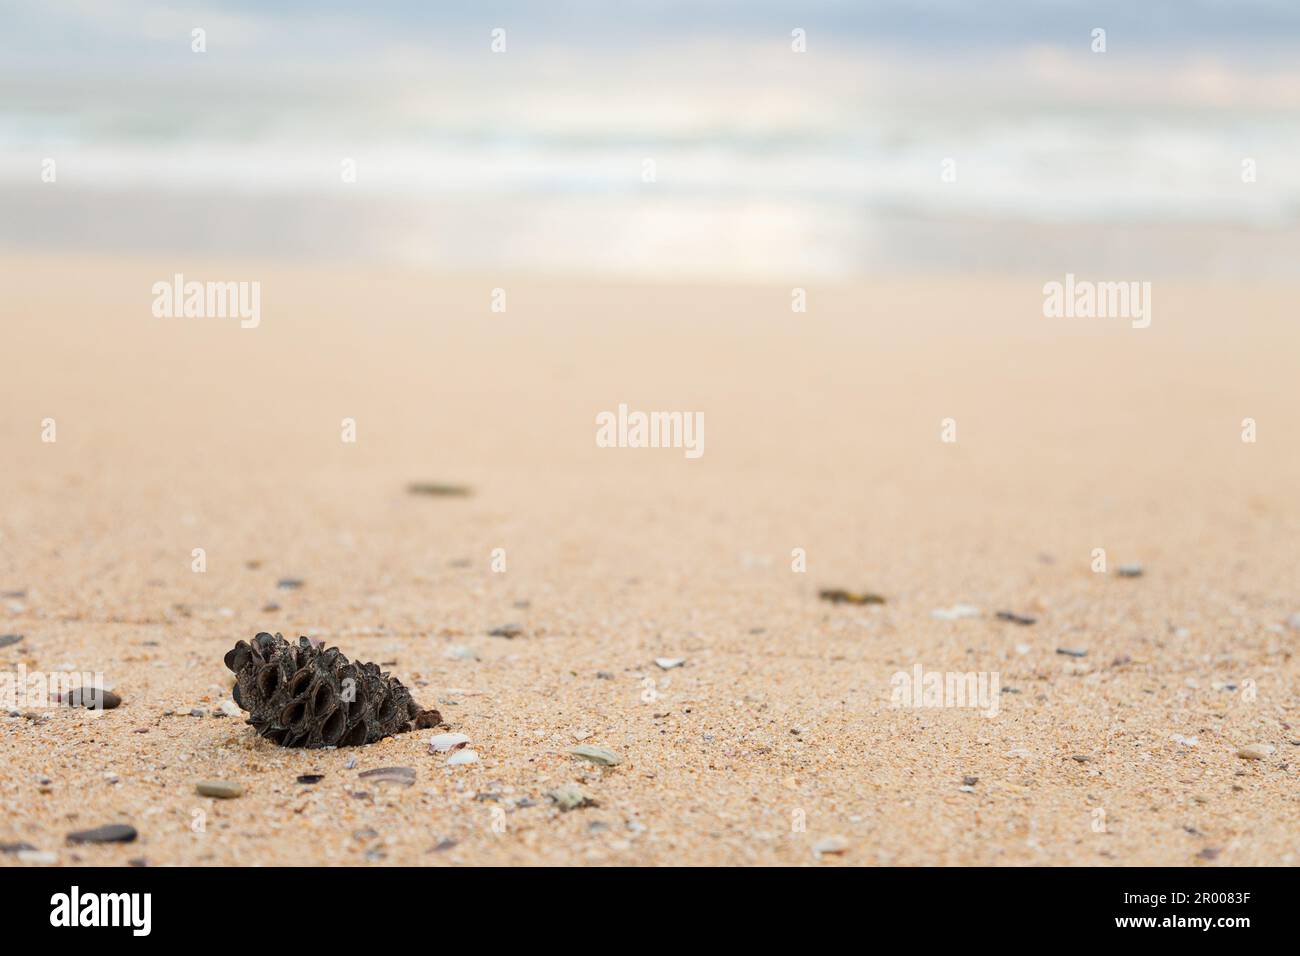 Gousse de graines australiennes, noix de banksia lavée sur une plage de sable avec espace de copie, vue à angle bas vers l'océan Banque D'Images